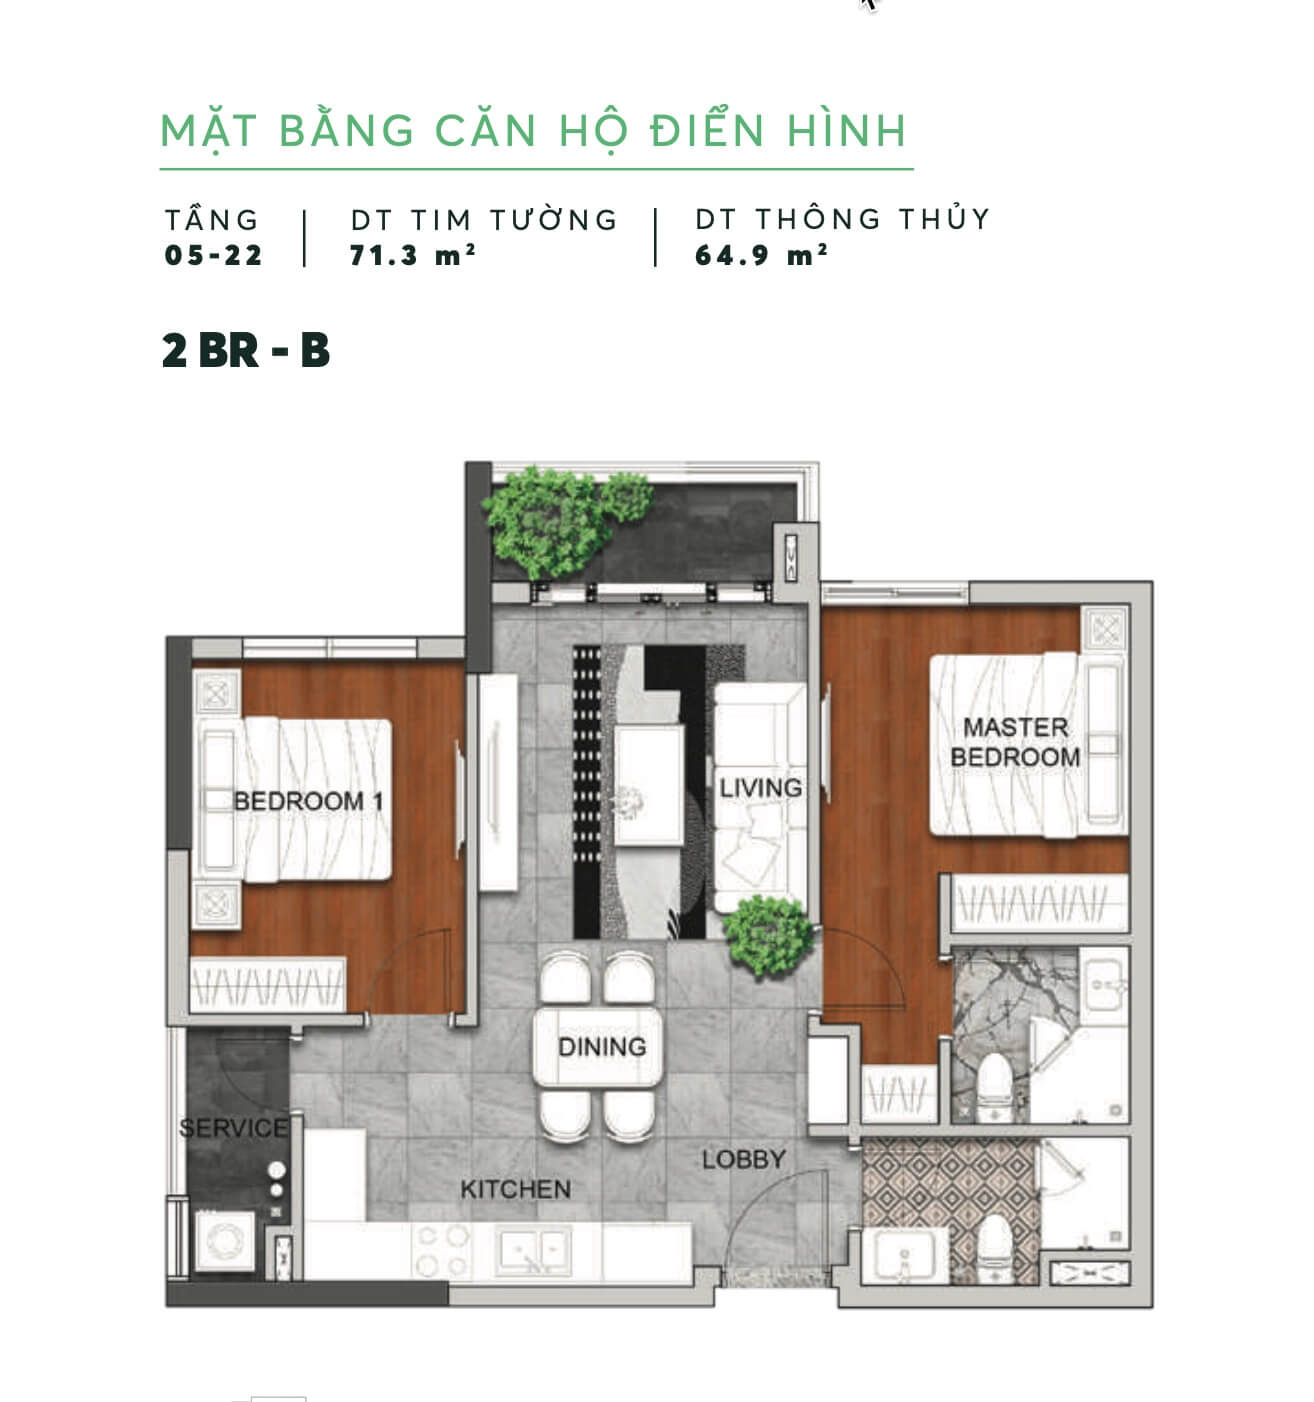 Mat Bang Can Ho Dien Hinh 12